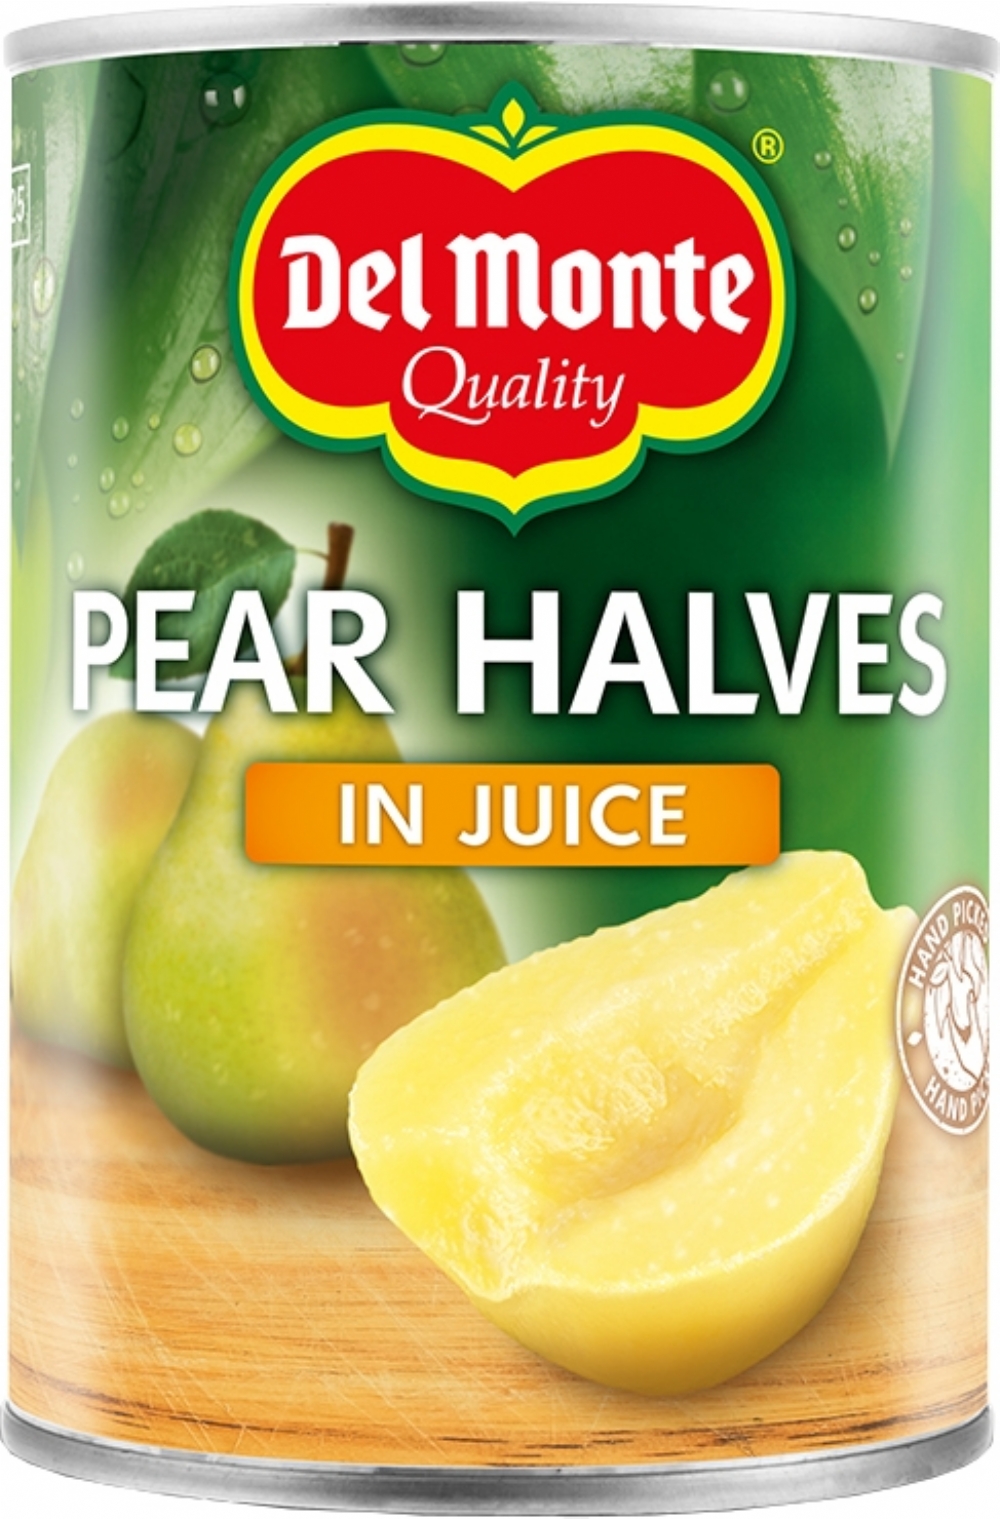 DEL MONTE Pear Halves in Juice 415g